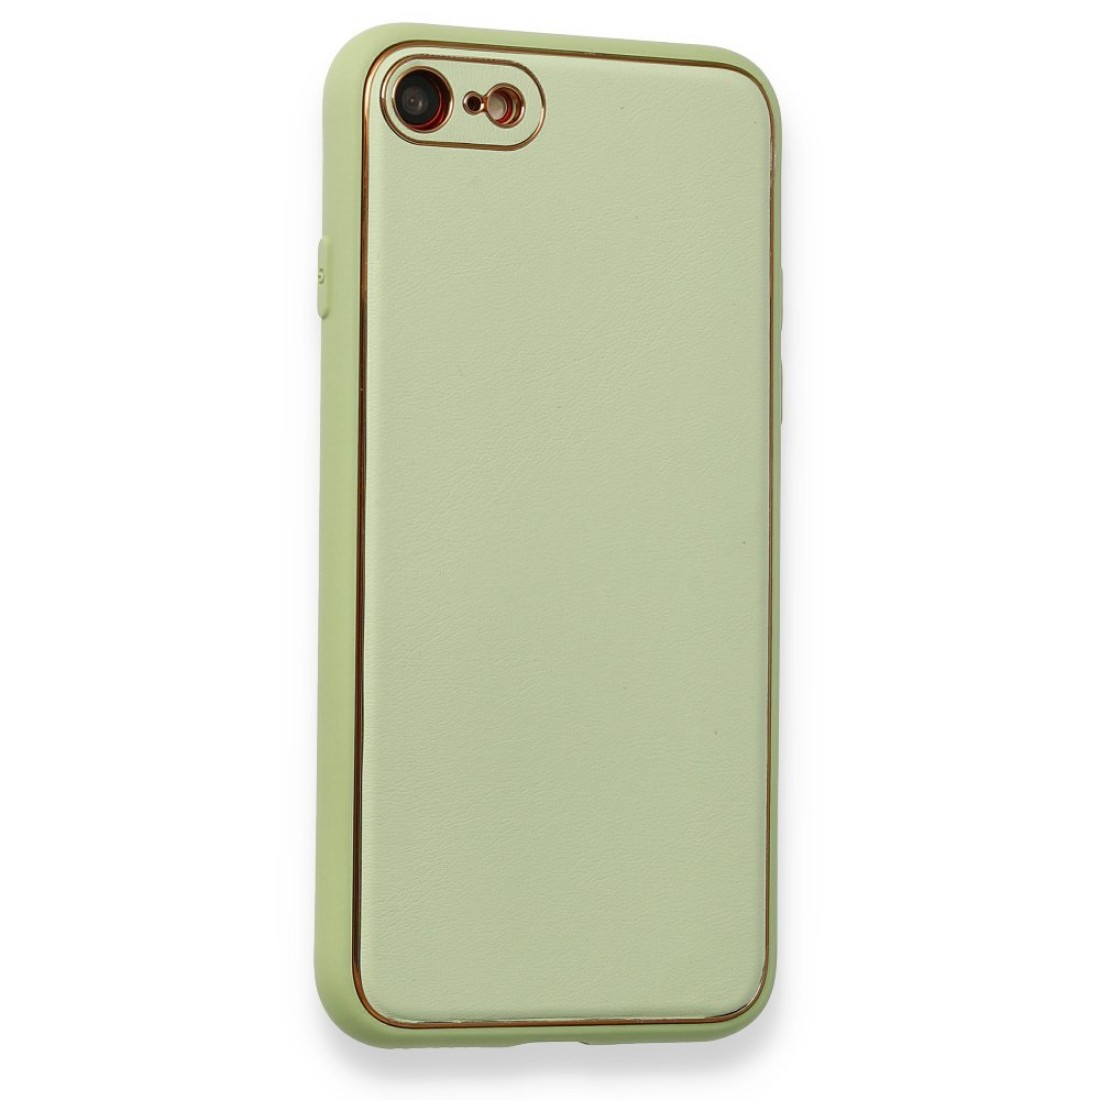 Apple iPhone SE 2020 Kılıf Coco Deri Silikon Kapak - Açık Yeşil